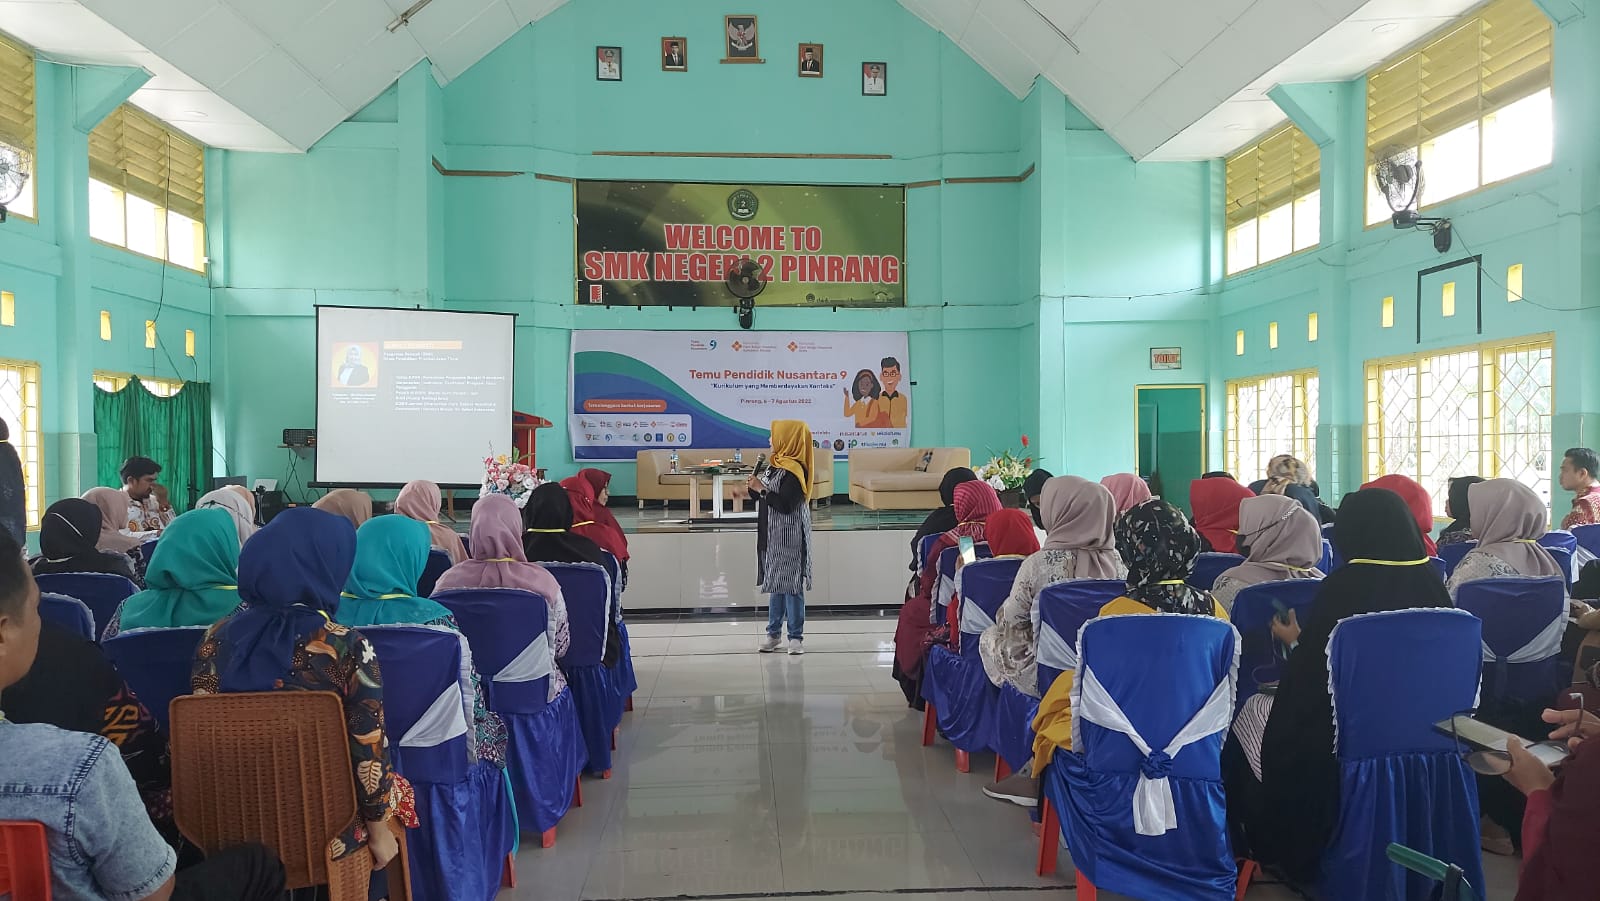 Temu Pendidik Nusantara 9 Pinrang, Dukung Guru Terapkan Kurikulum Merdeka Tanpa Miskonsepsi